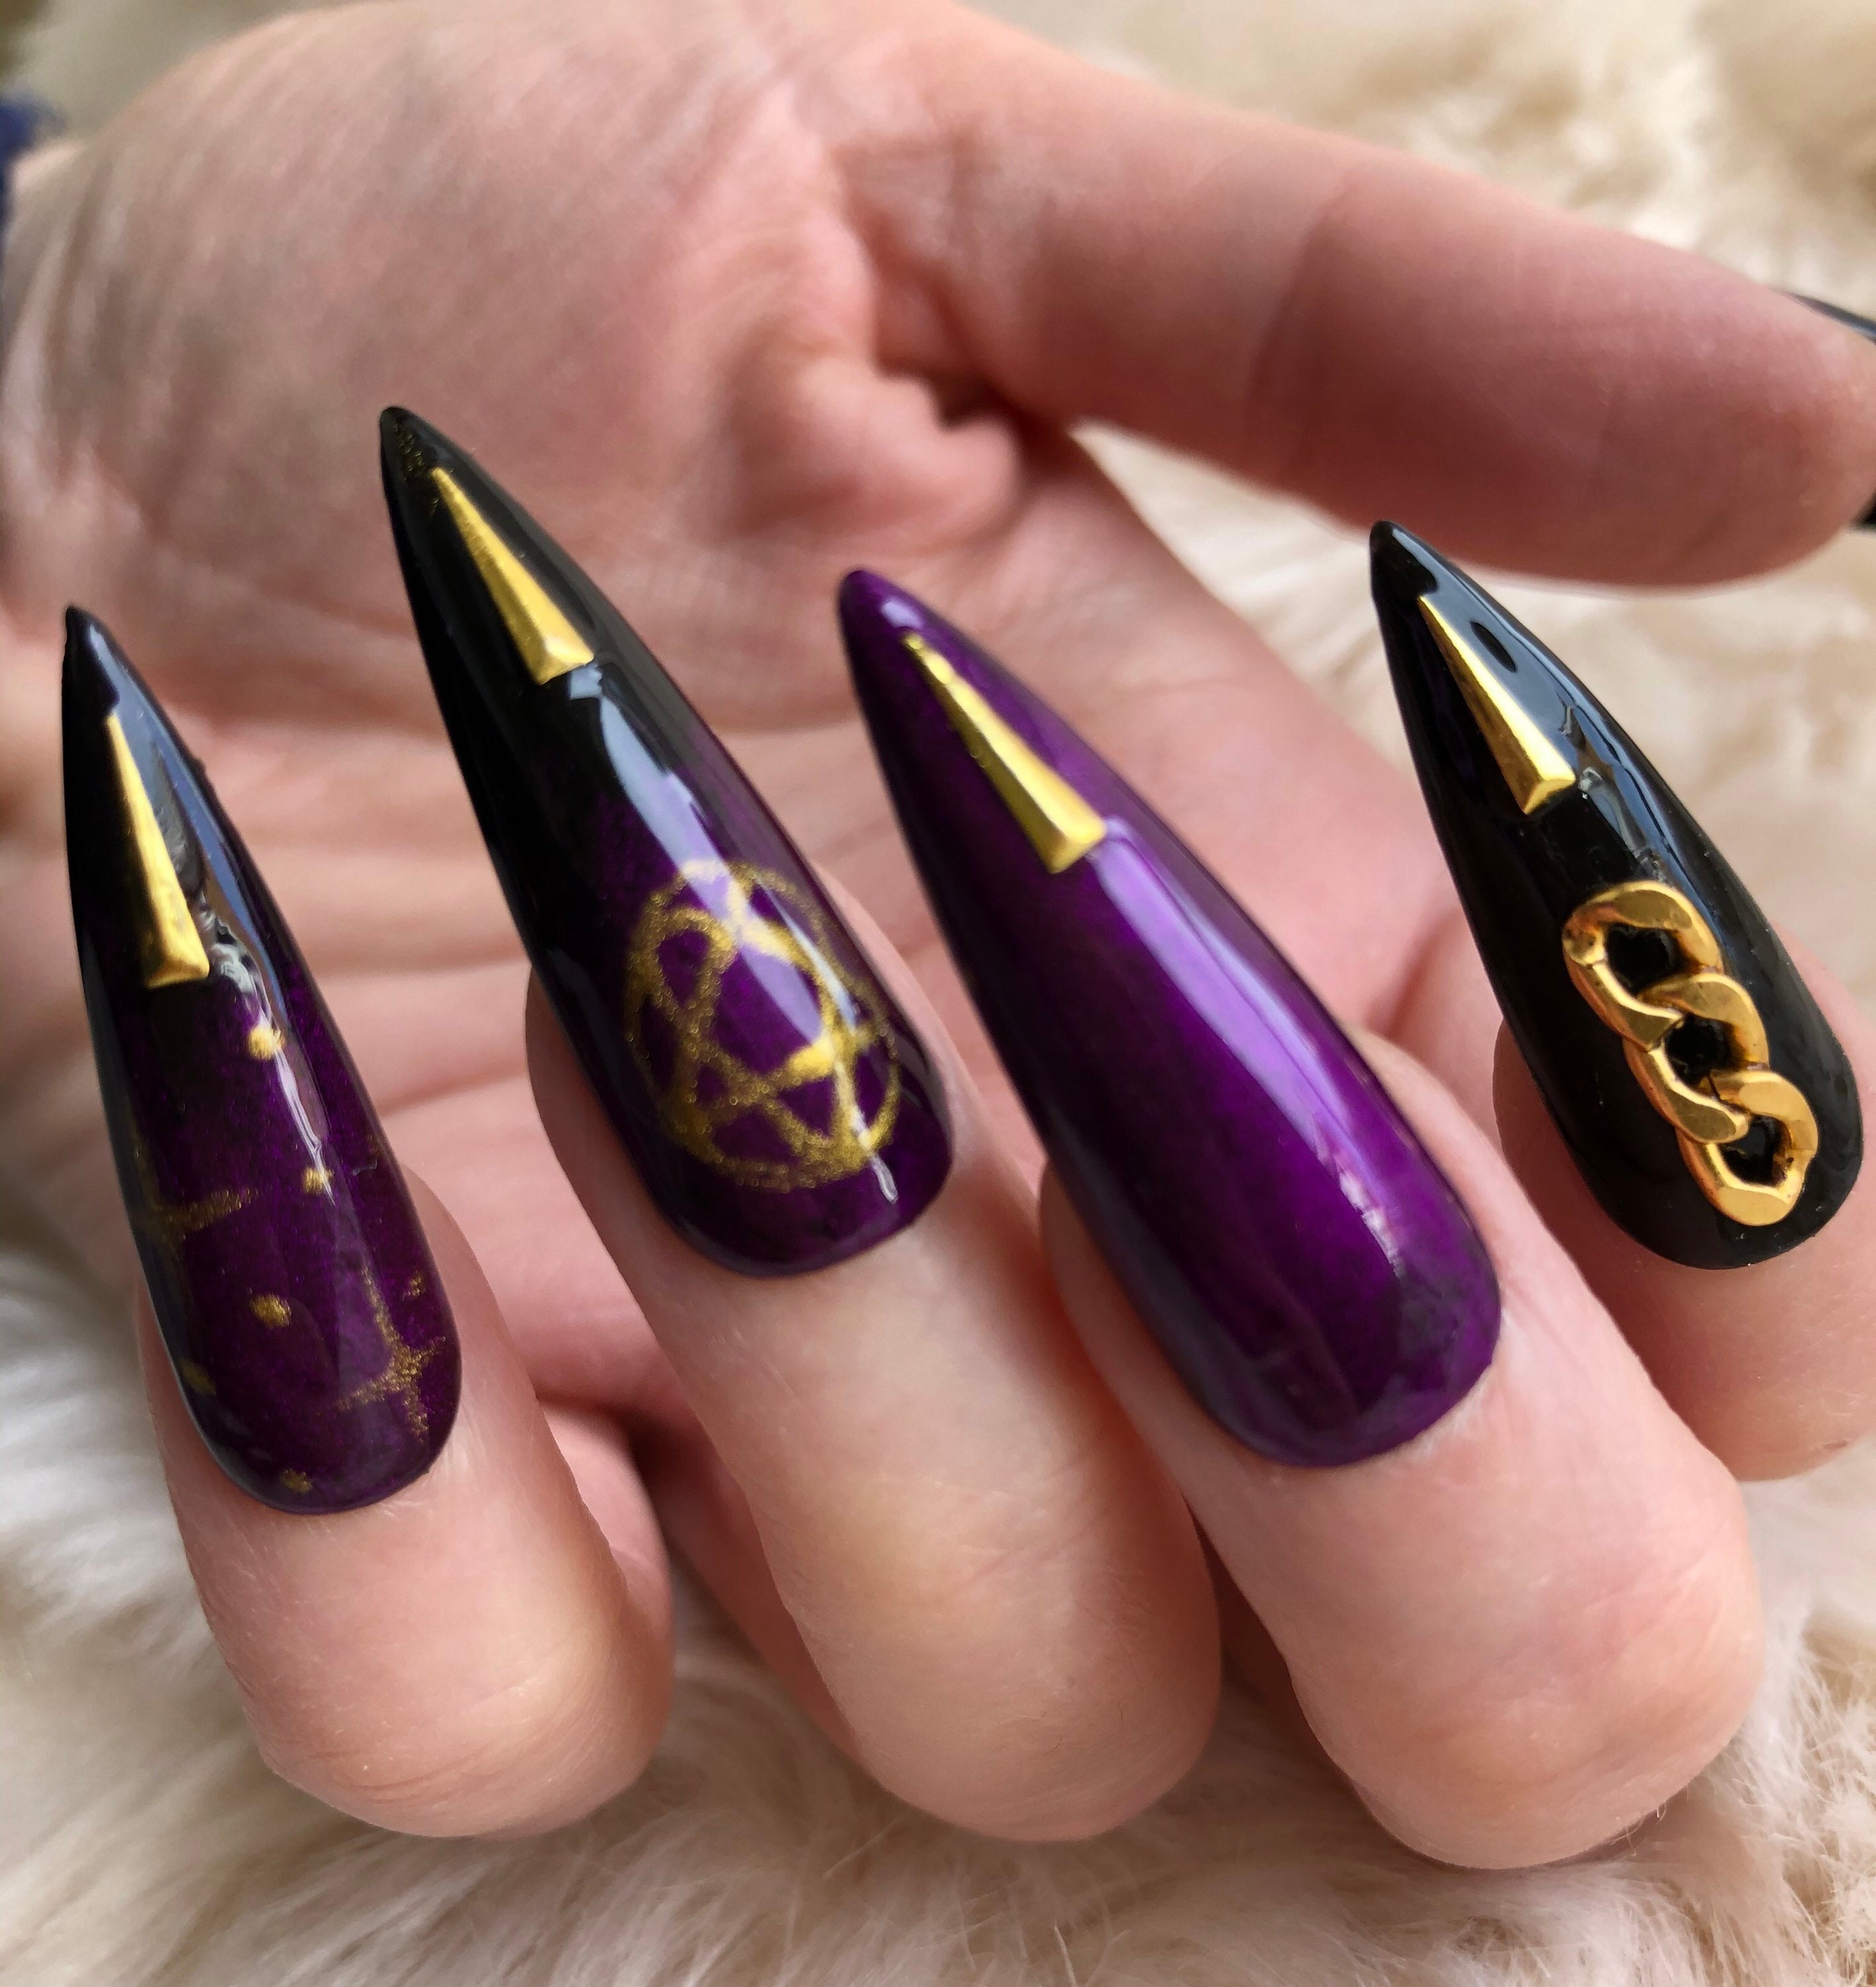 Thiết kế lạ mắt, độc đáo, phù hợp cho những ai yêu thích phong cách dark và đang tìm kiếm sự khác biệt cho bộ nail của mình.